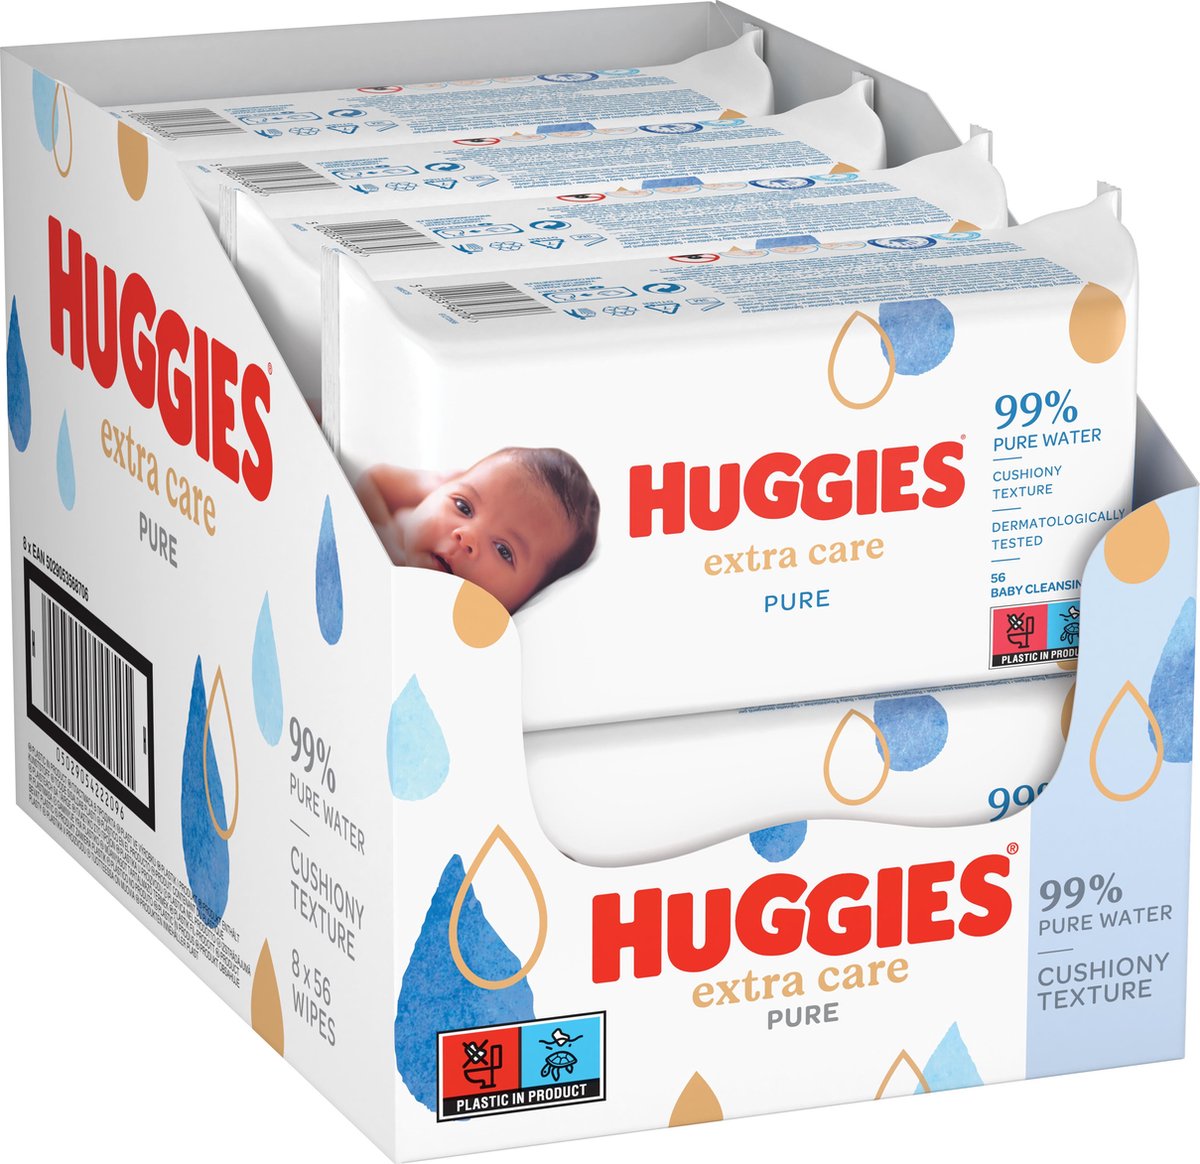 Huggies lingettes bebe - Lingettes pour bébé Huggies (10 x 56 pièces), VavaBid